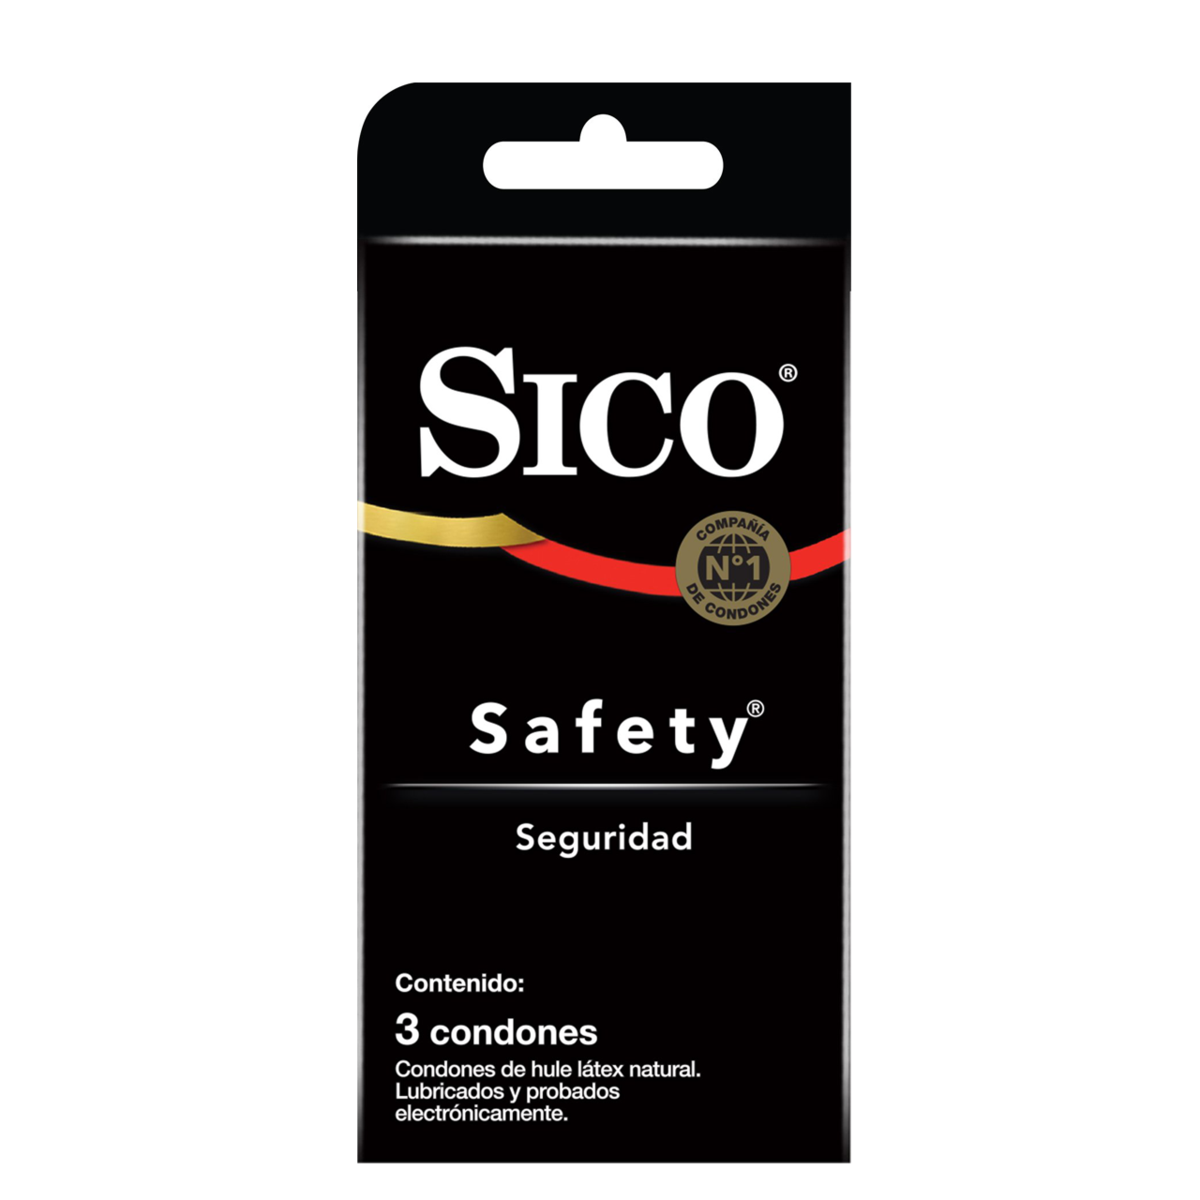 Condones Sico: *Qué son y para qué sirven? 